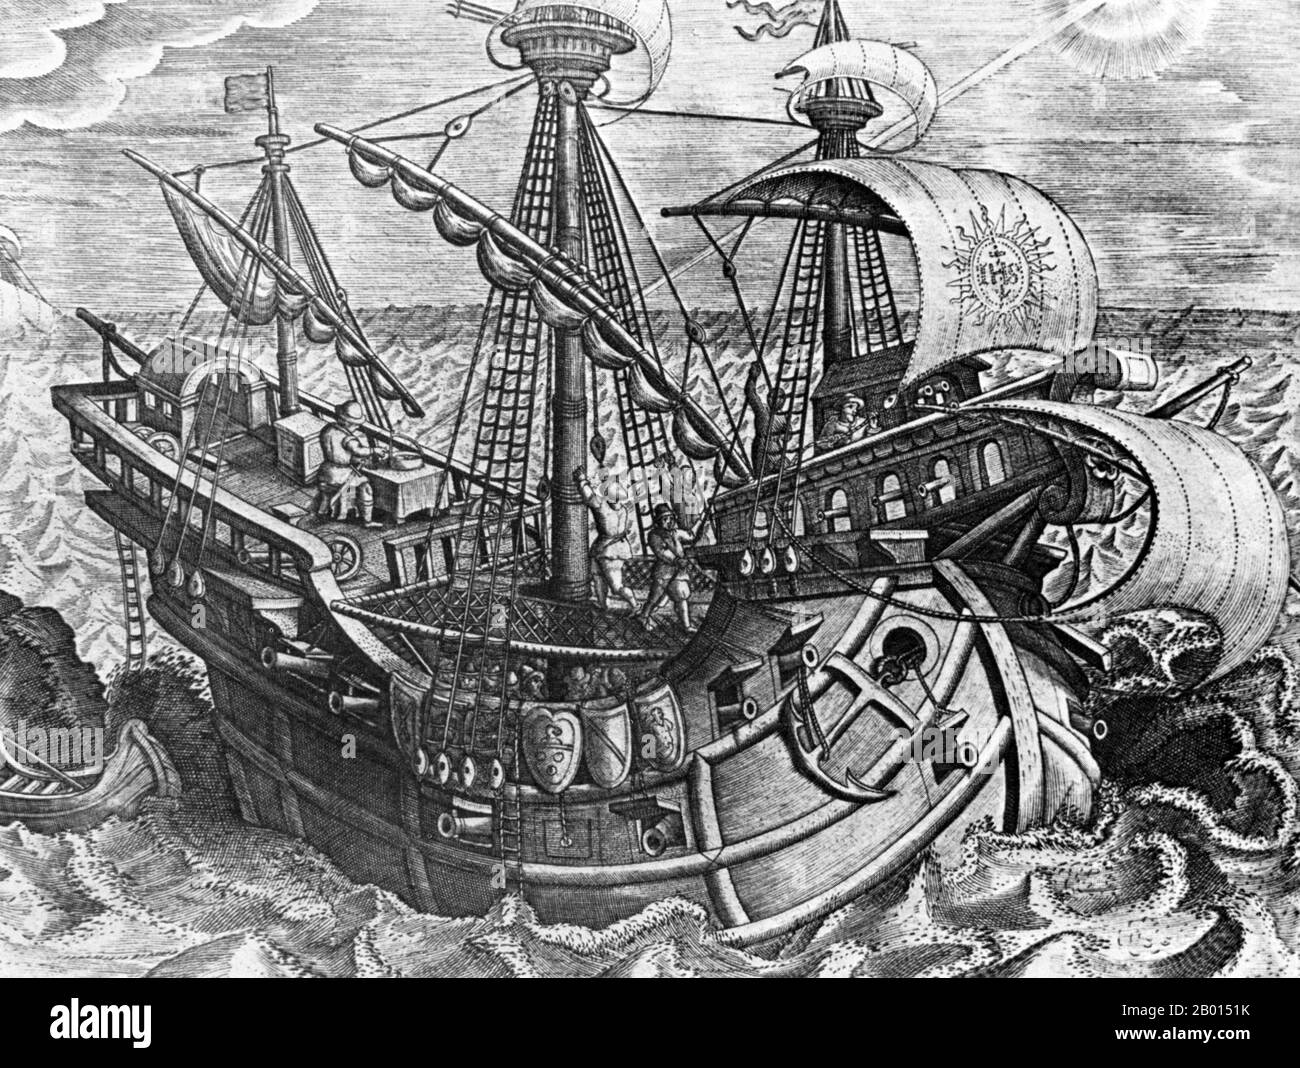 Spanien/Amerika: Ein spanischer Carrack auf einer Atlantikexpedition Anfang des 15. Jahrhunderts, auf der Suche nach einer Route zum Pazifik. Beachten Sie, dass der Pilot auf dem Oberdeck einen Anblick mit einem Sextanten nimmt. Stich von Johannes Stradanus (1523-1605), c. 1600. Ferdinand Magellan oder Fernão de Magalhães, (c. 1480–1521) war ein portugiesischer Entdecker. Er wurde in Sabrosa, im Norden Portugals, geboren, erhielt aber später die spanische Staatsbürgerschaft, um König Karl I. von Spanien auf der Suche nach einer westwärts gerichteten Route zu den ‘Gewürzinseln’ (modernen Maluku-Inseln in Indonesien) zu dienen. Stockfoto